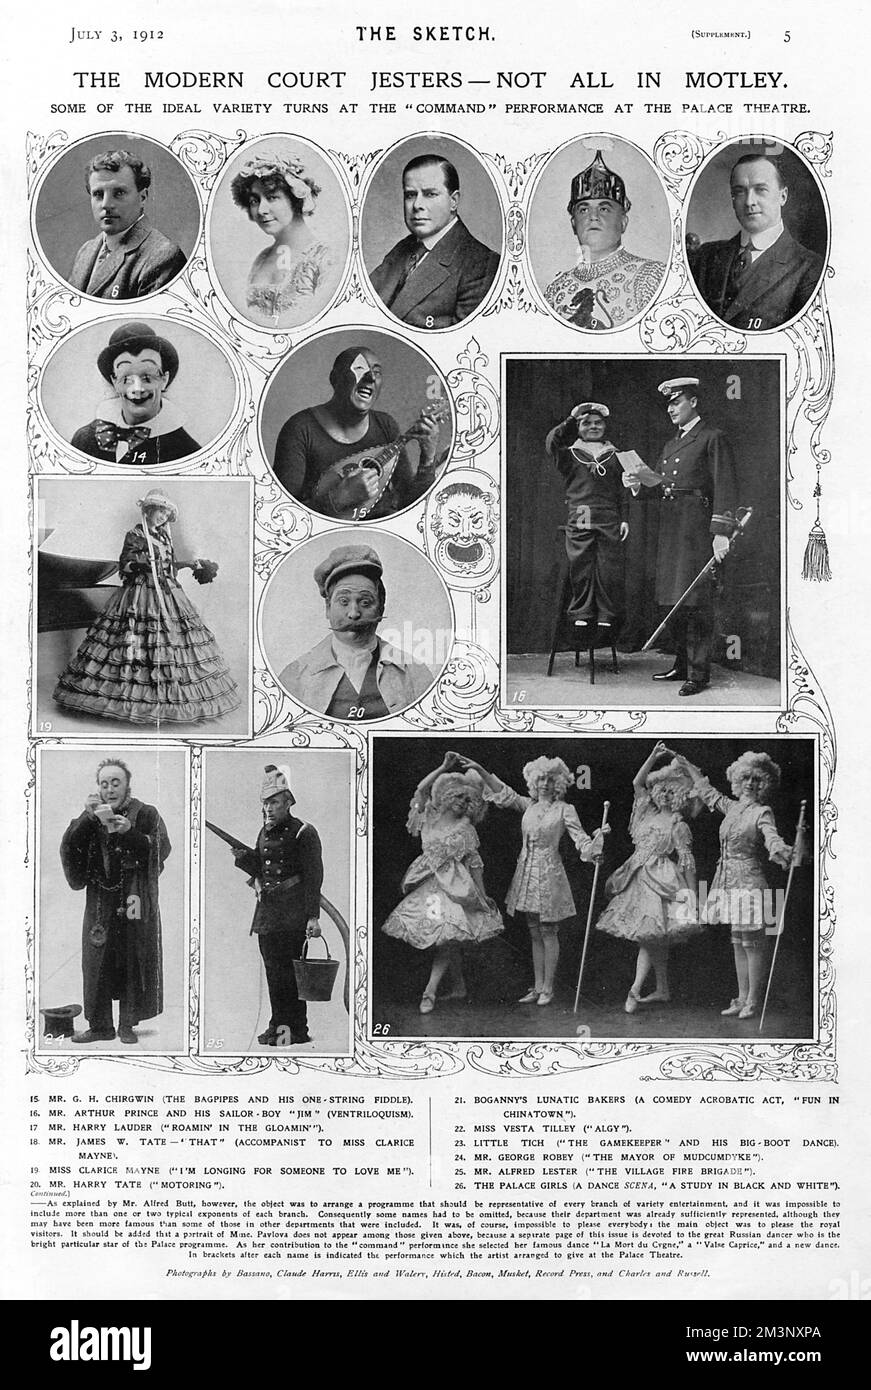 Einige der Besetzung der ersten Royal Variety Show im Palace Theatre, 1912. 6. Mr. Charles Aldrich (schnelle Identitätswechsel und Jonglieren) 7. Miss Cissie Loftus (Imitationen bekannter Künstler) 8. Mr. David Devant (eine neue Illusion) 9. Mr. Harry Claff (Gott schütze den König) 10. Mr. Wilkie Bard (der Nachtwächter) 14. Herr Edwin Rece Pippafax (in Humpti-bumpsti) 15. Mr. G. H Chirgwin (die Dudelsäcke und seine einsträngige Fiedel) 16. Mr. Arthur Prince und sein Seemannsjunge Jim (Bauchredner) 19. Miss Clarice Mayne (Ich sehne mich danach, dass mich jemand liebt) 20. Herr Harry Tate (Motoring) 24. M Stockfoto